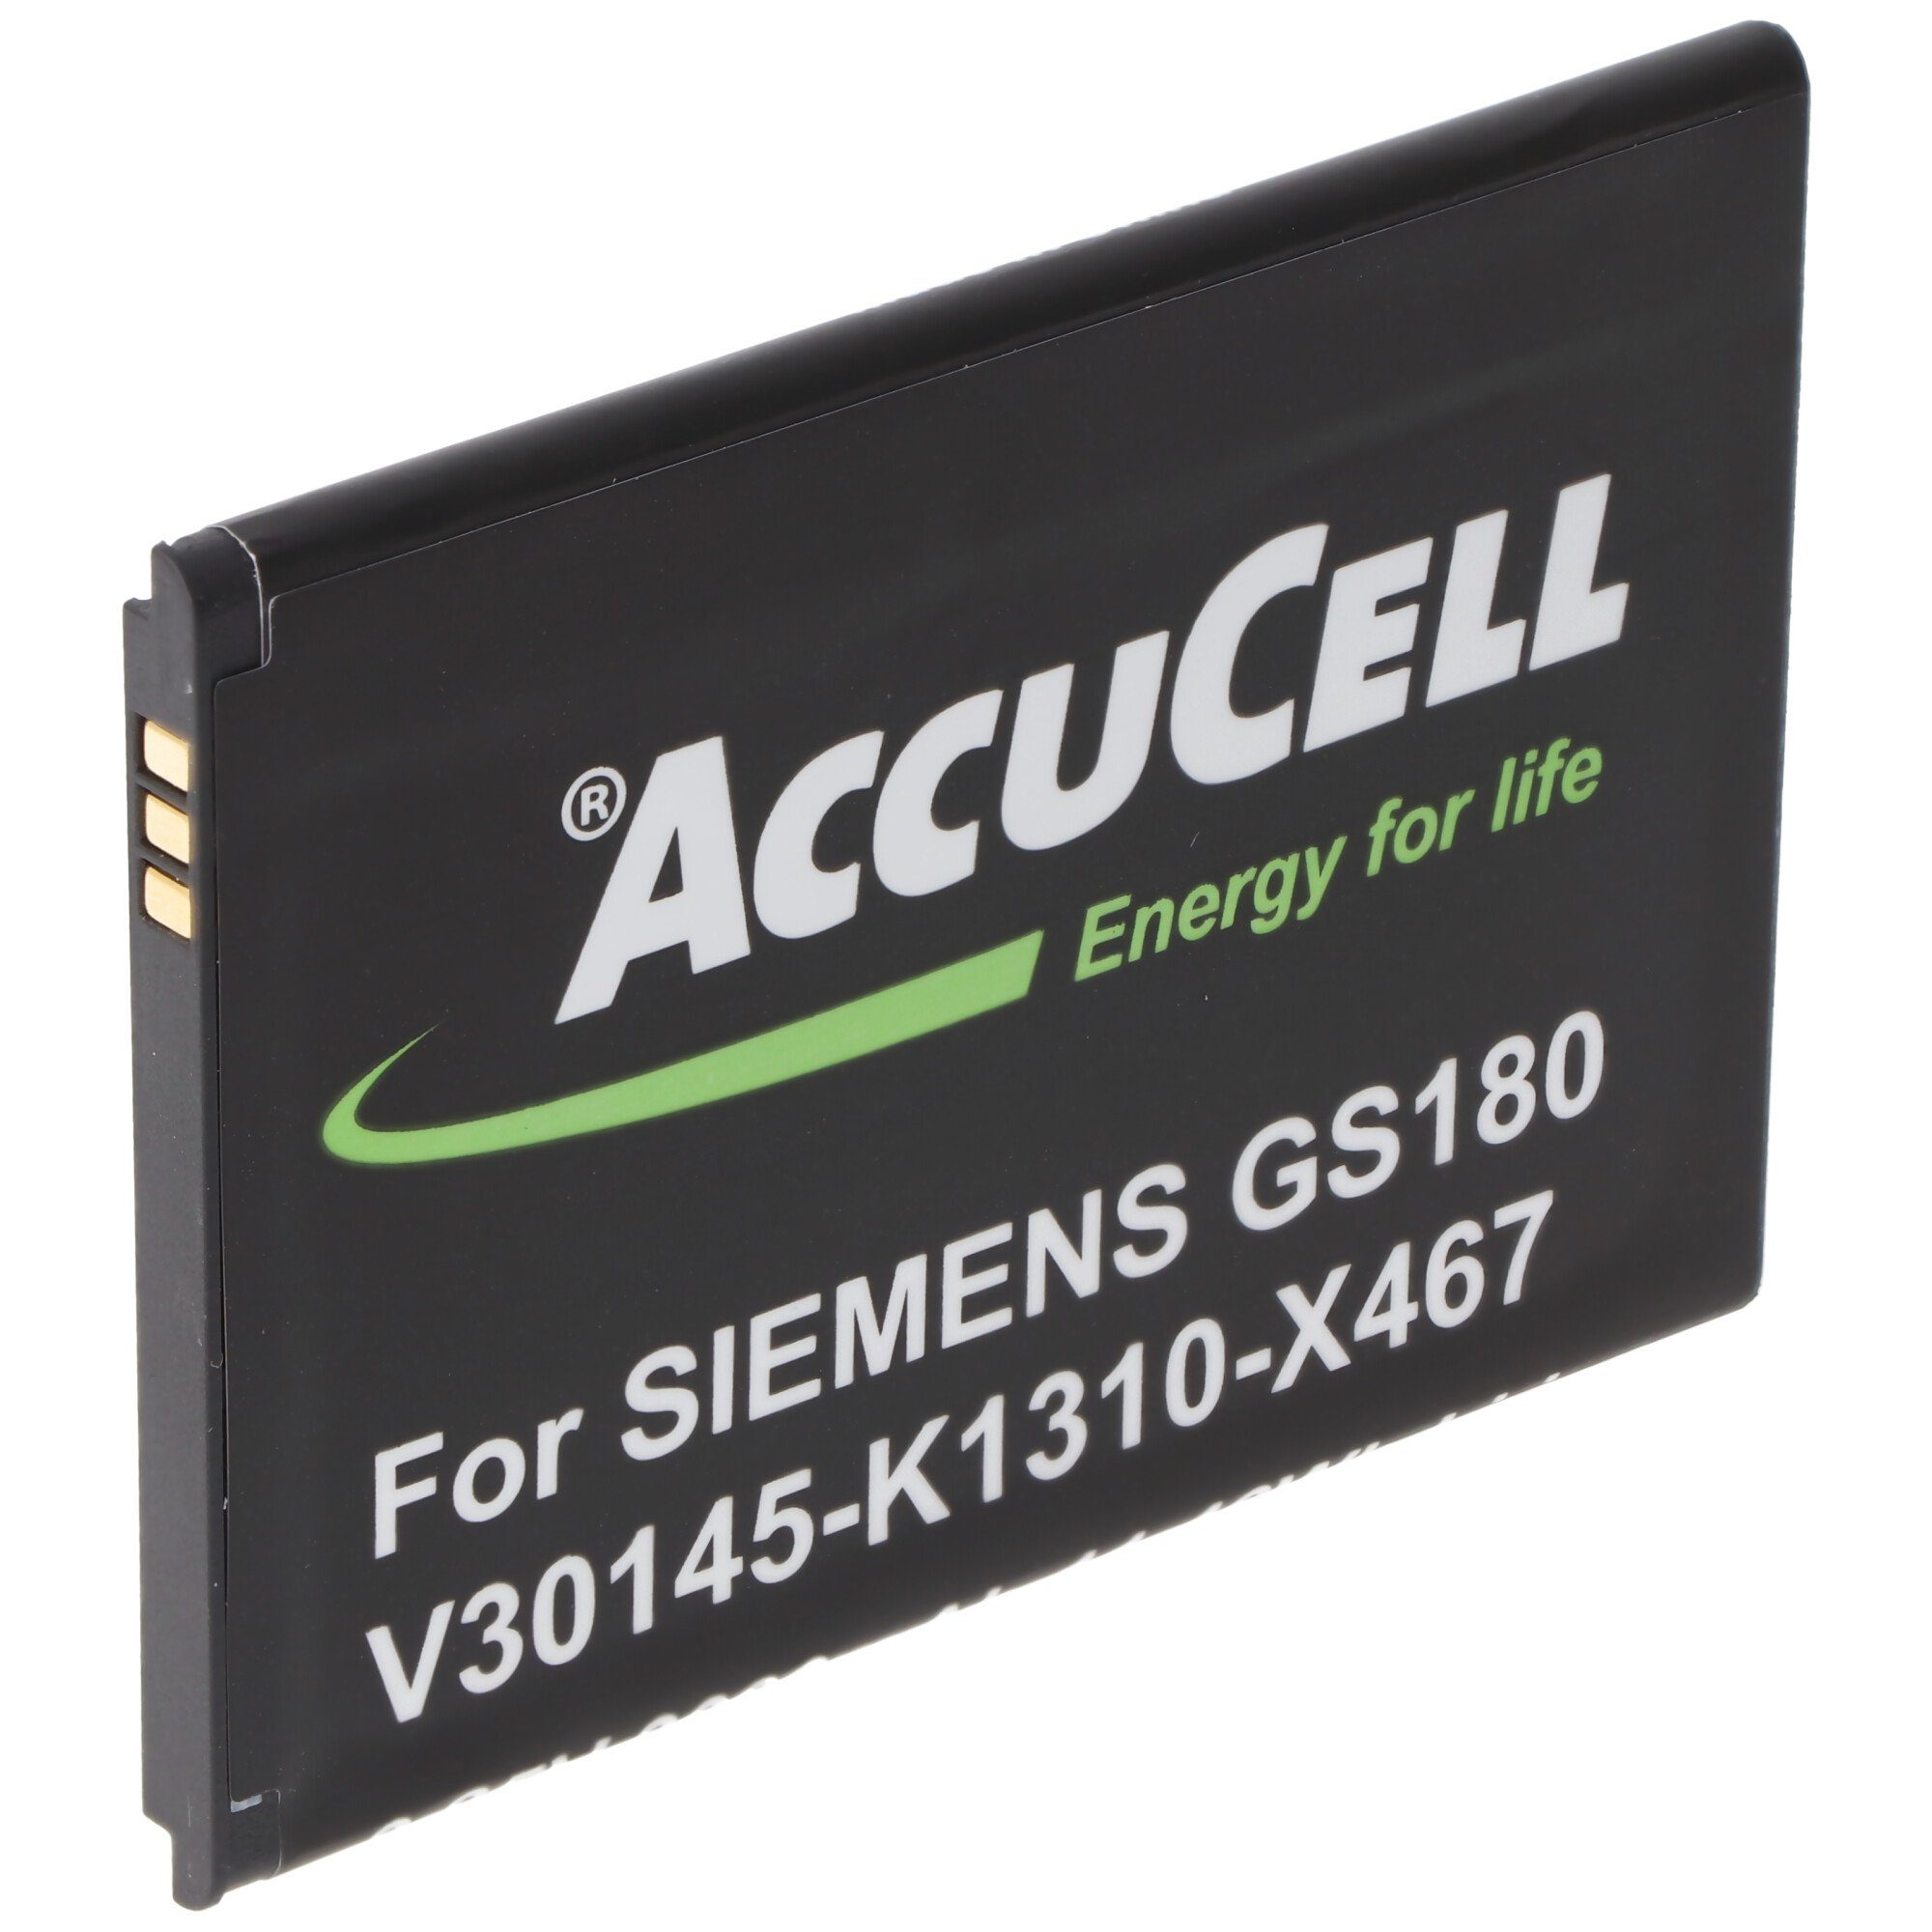 (3,8 V) AccuCell GS180 passend Gigaset V30145-K1310-X467 für Siemens mAh AccuCell 3,8 Akku Akku 3000